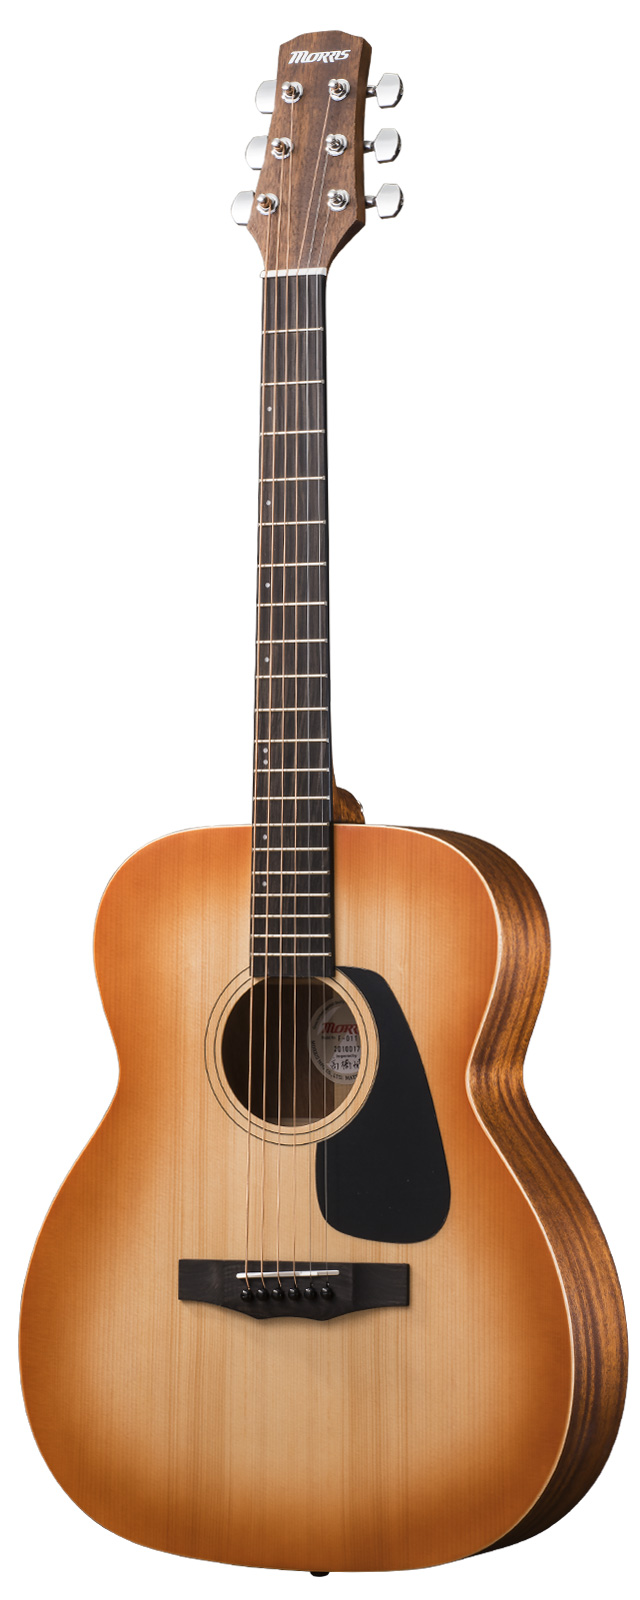 Morris F-011 HS акустическая гитара Morris вилка размер мед солнечный Burst akogi начинающий ограниченное количество мелкие вещи комплект есть 